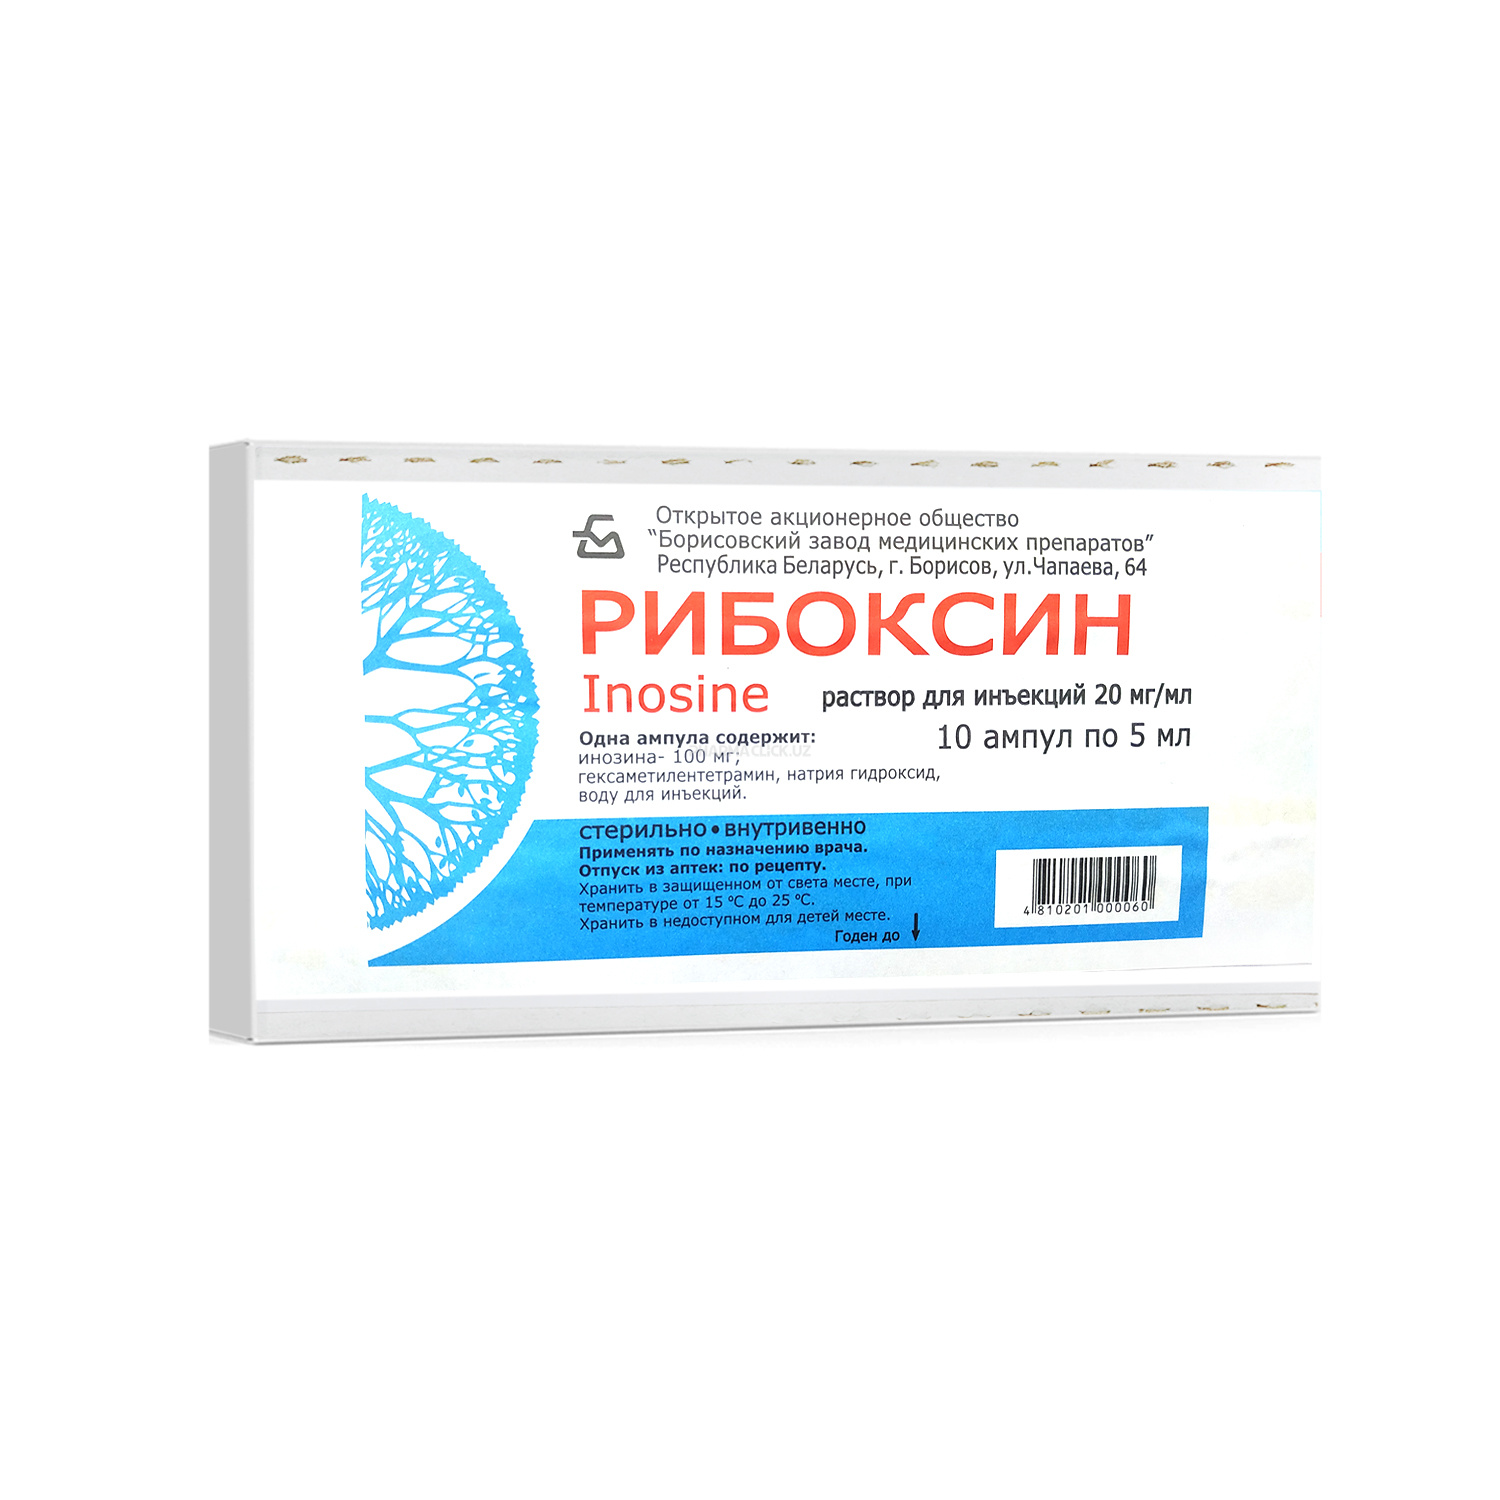 Riboksin amp. 2% 5ml №10 Borisovskiy